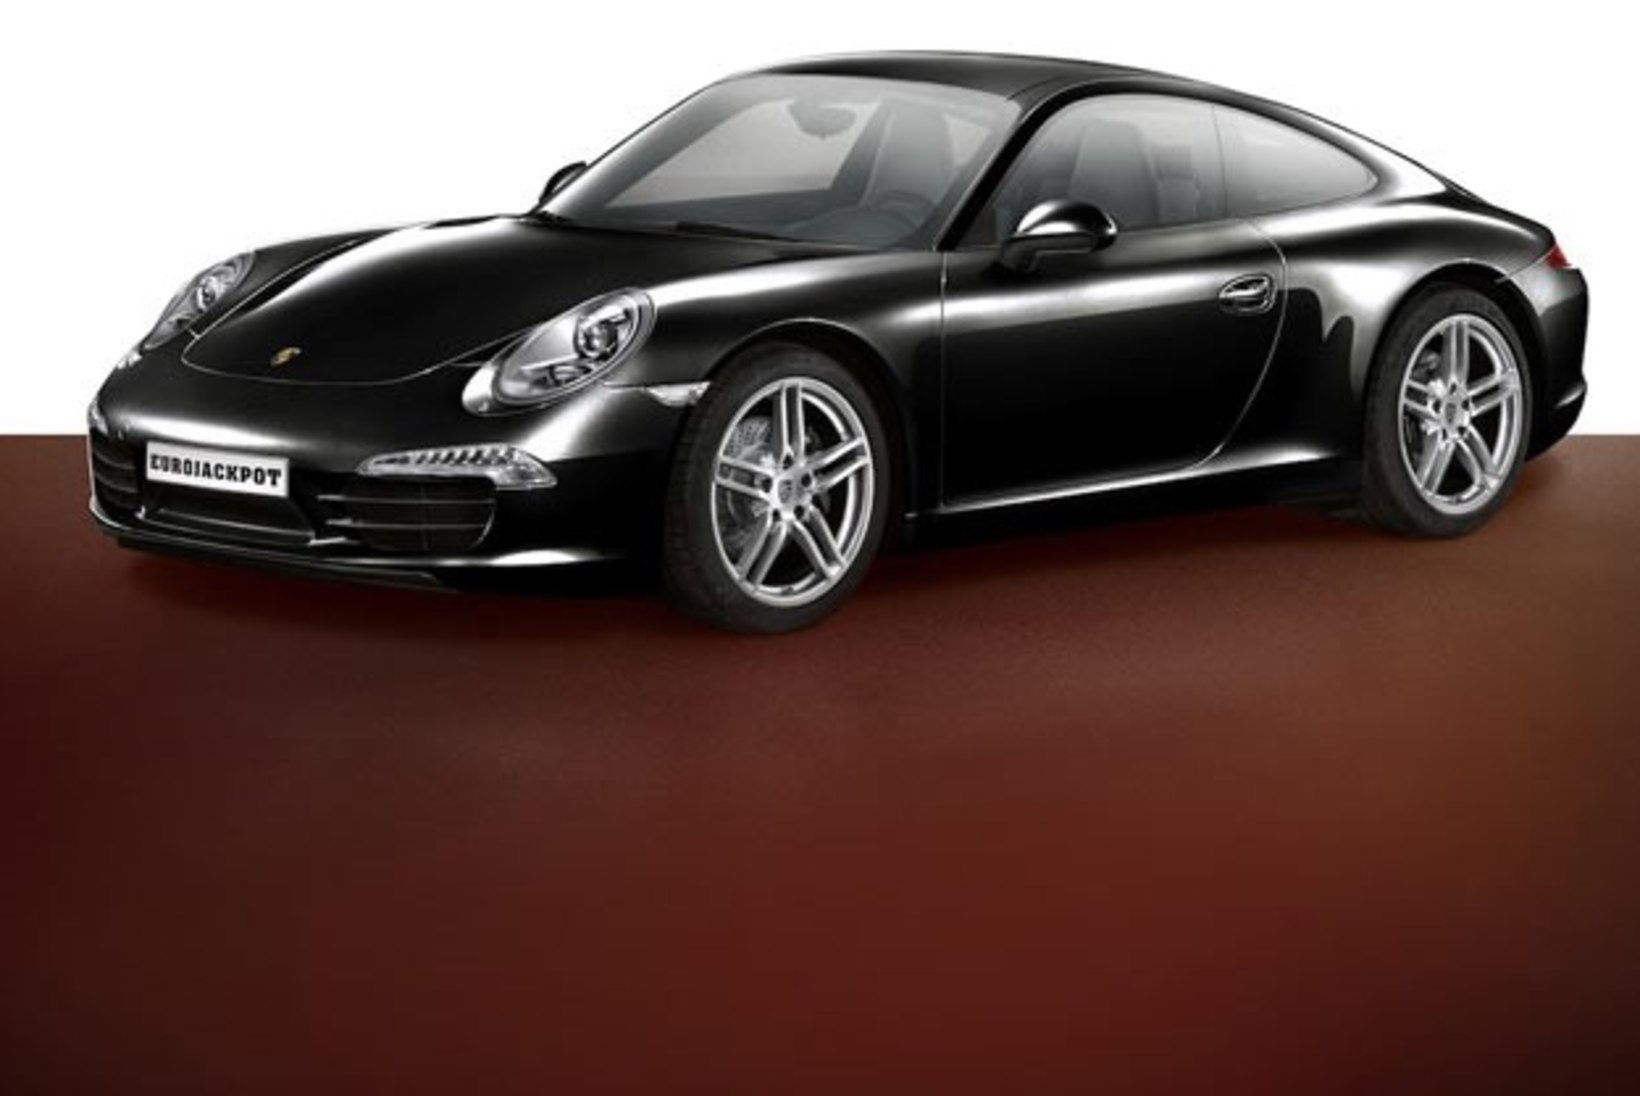 Täna saab üks Eesti lotomängija Porsche võrra rikkamaks